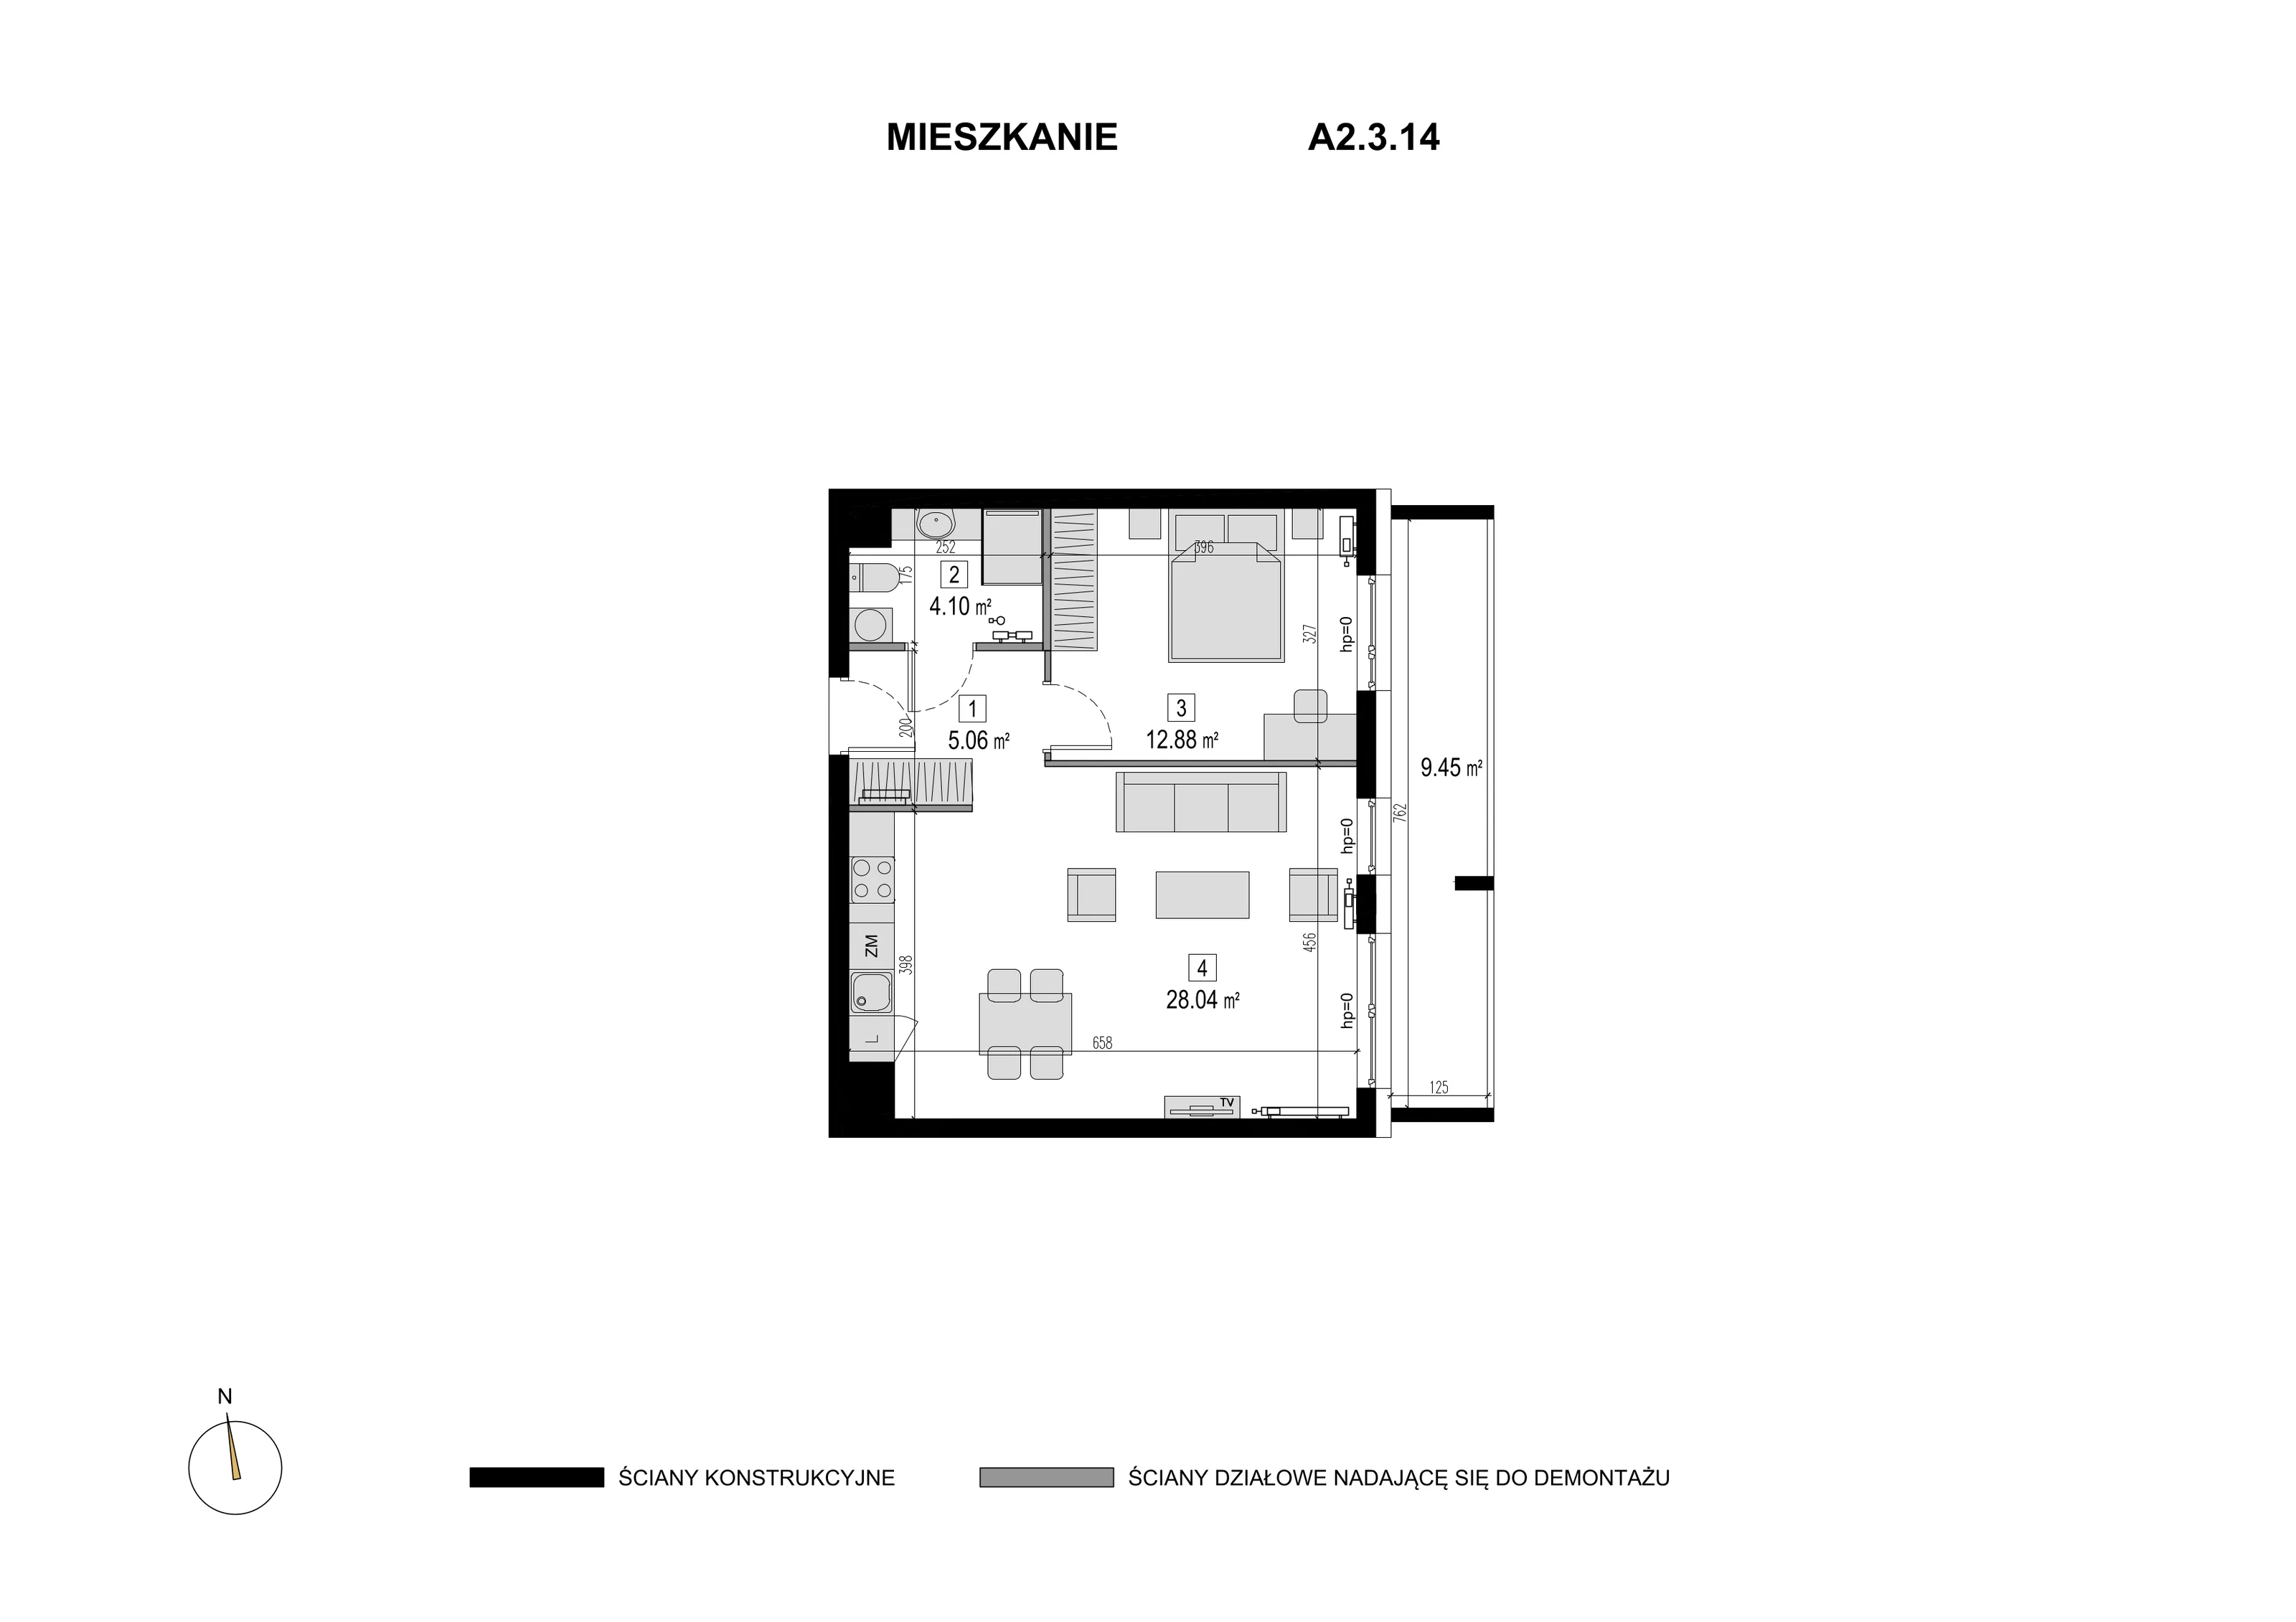 Mieszkanie 50,08 m², piętro 2, oferta nr A2.3.14, Novaforma, Legnica, ul. Chojnowska